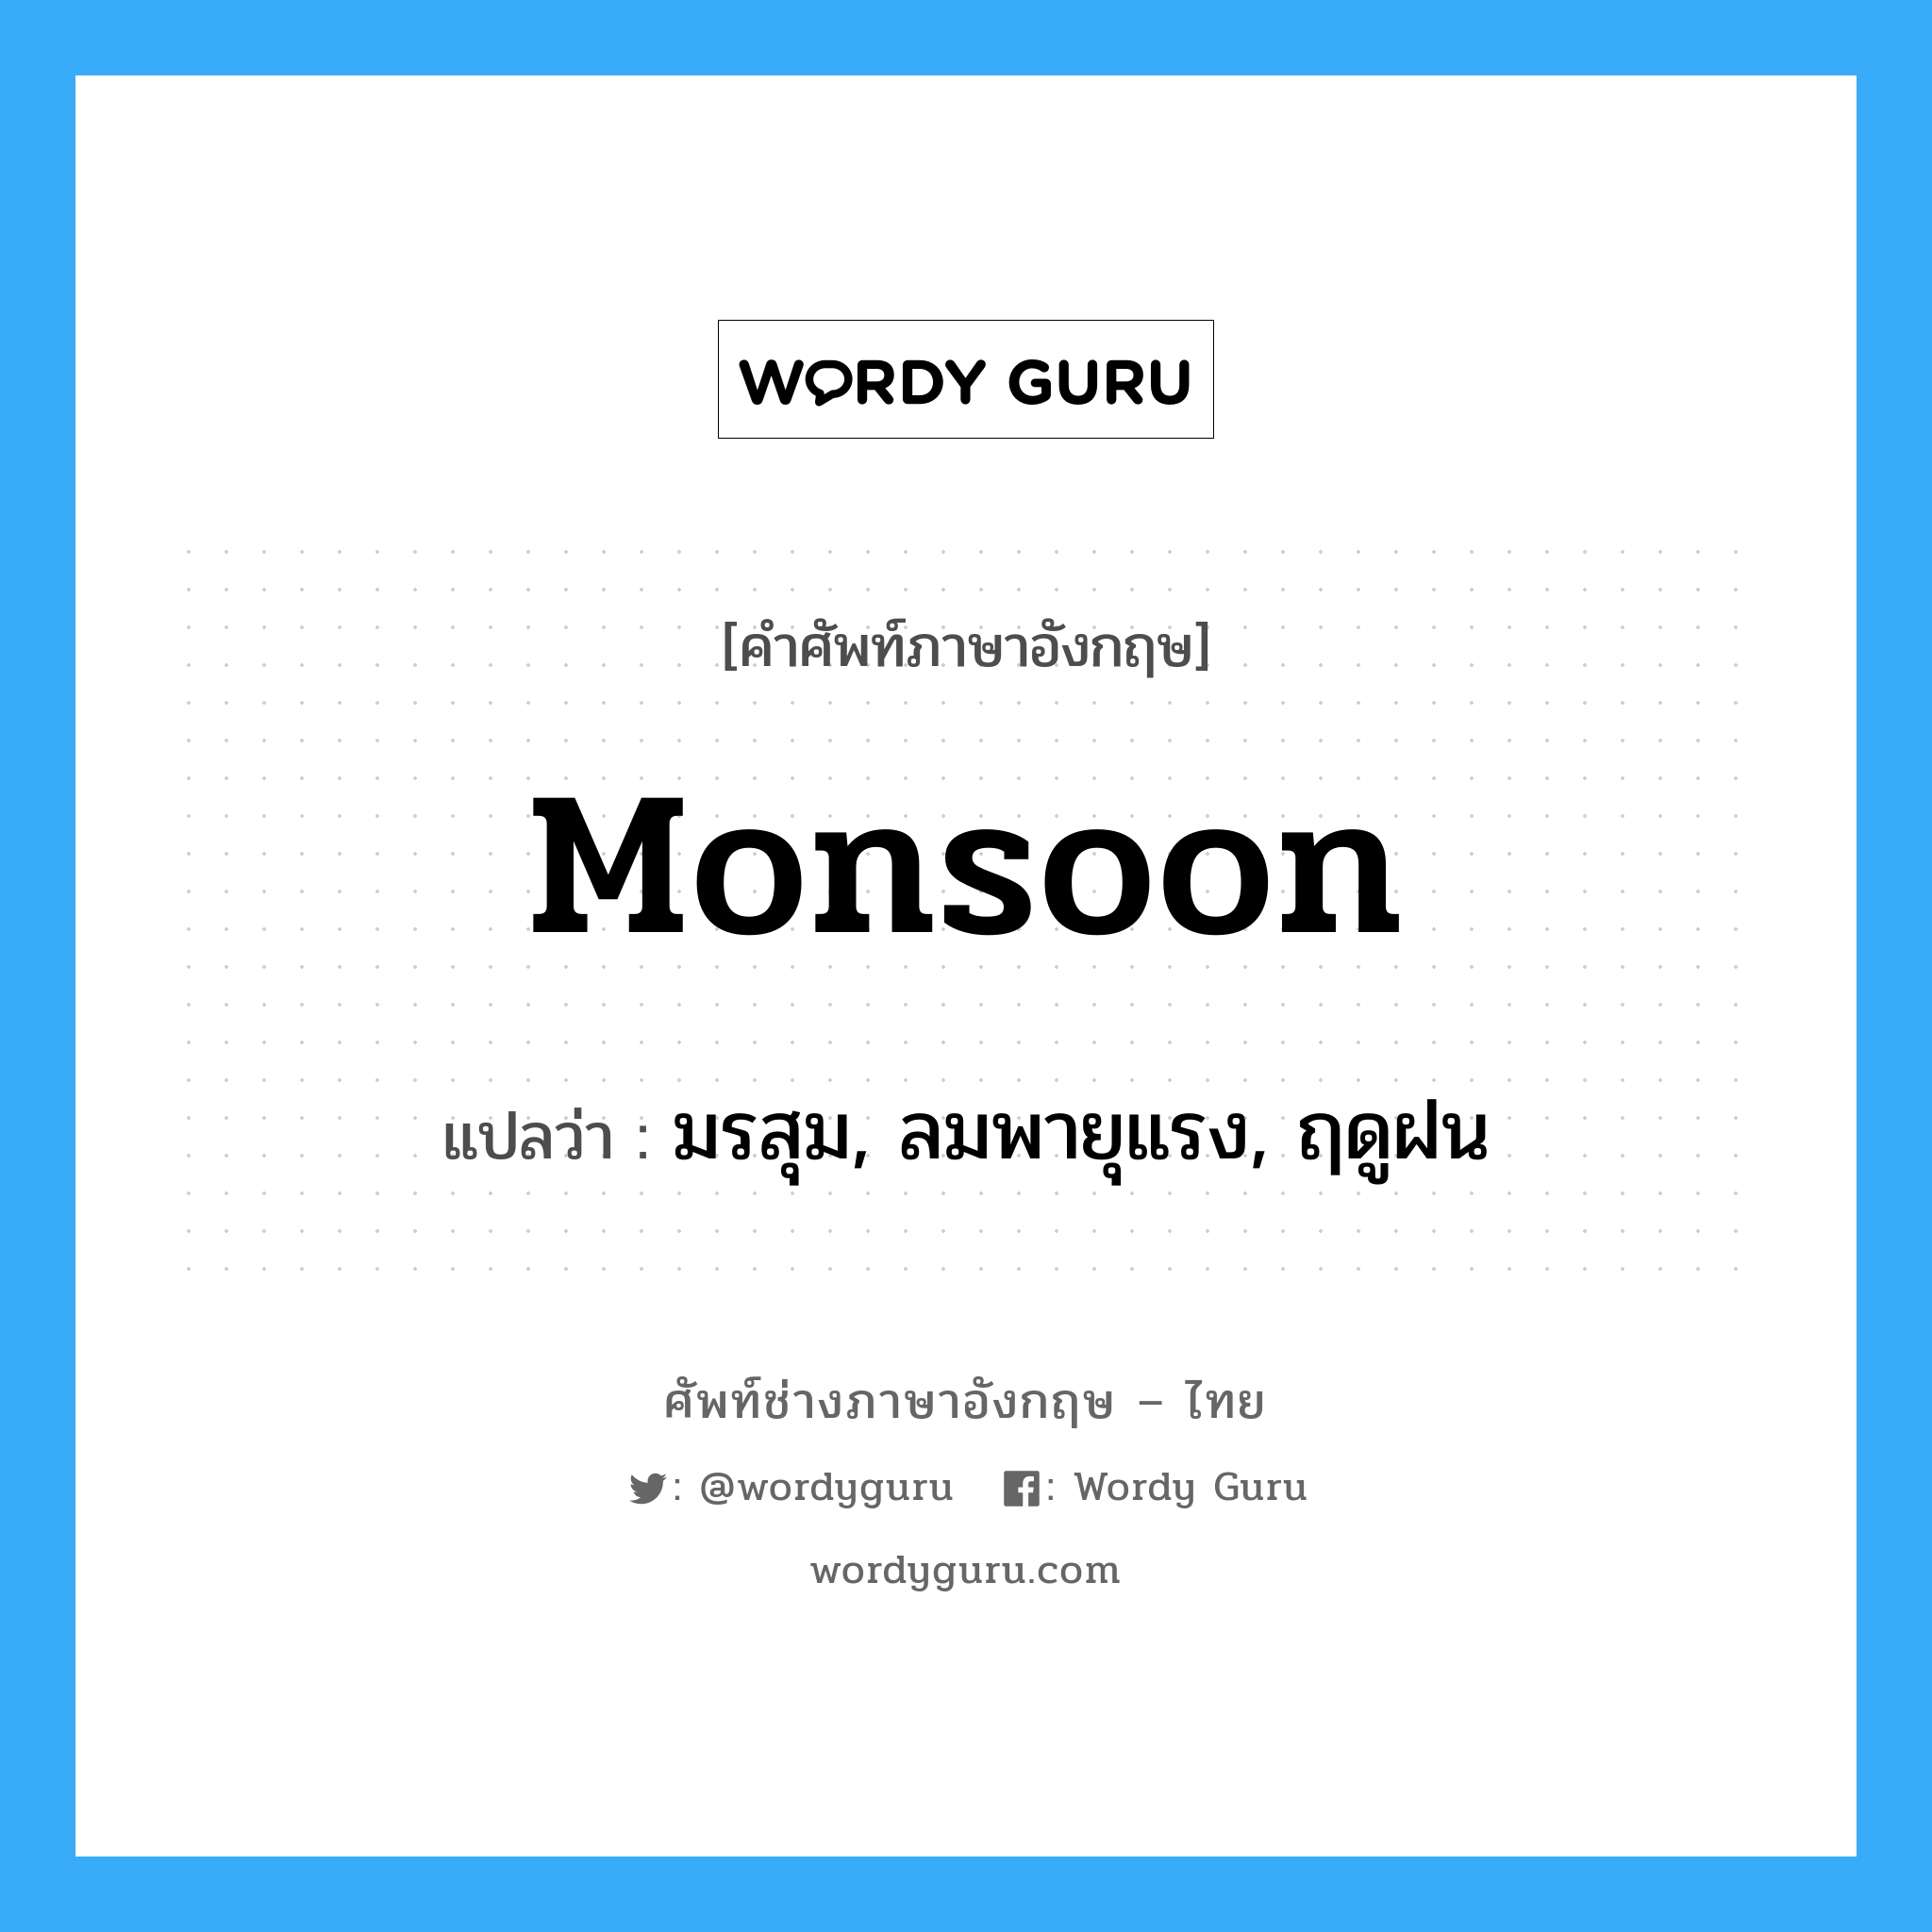 monsoon แปลว่า?, คำศัพท์ช่างภาษาอังกฤษ - ไทย monsoon คำศัพท์ภาษาอังกฤษ monsoon แปลว่า มรสุม, ลมพายุแรง, ฤดูฝน